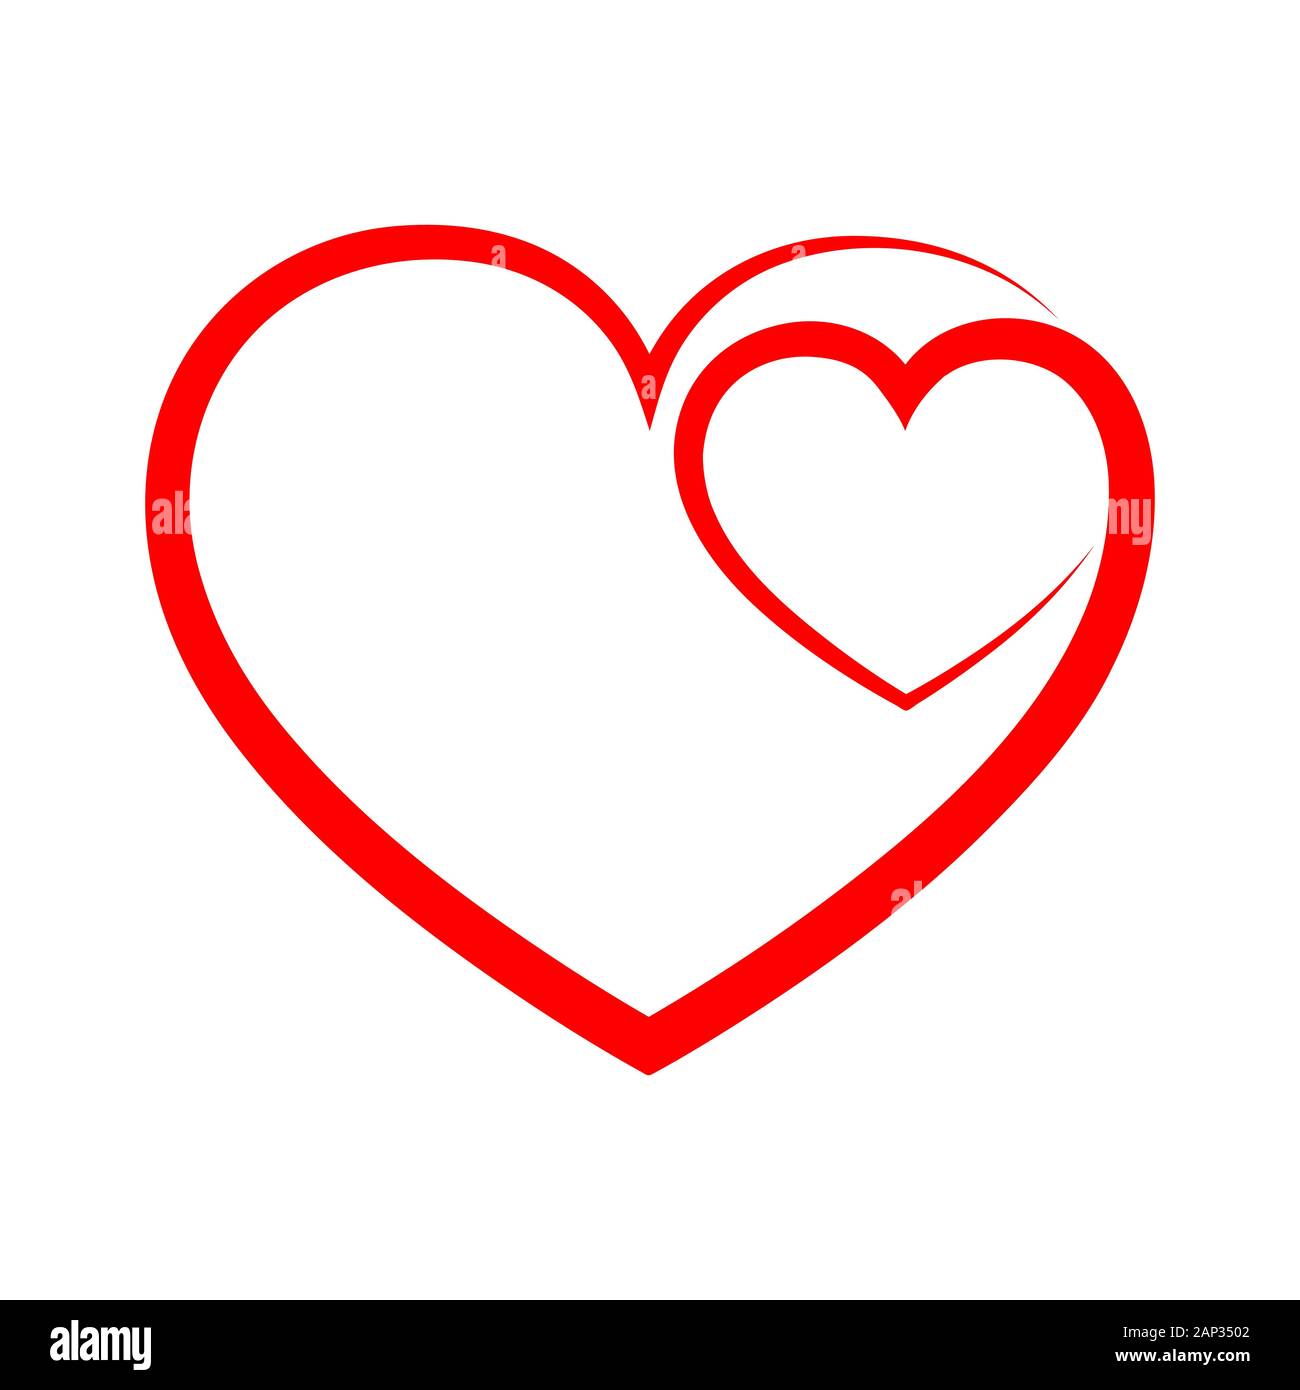 Abstraktes Herz Form skizzieren. Vector Illustration. Rotes Herz Symbol im flachen Stil. Das Herz als Symbol der Liebe. Stock Vektor